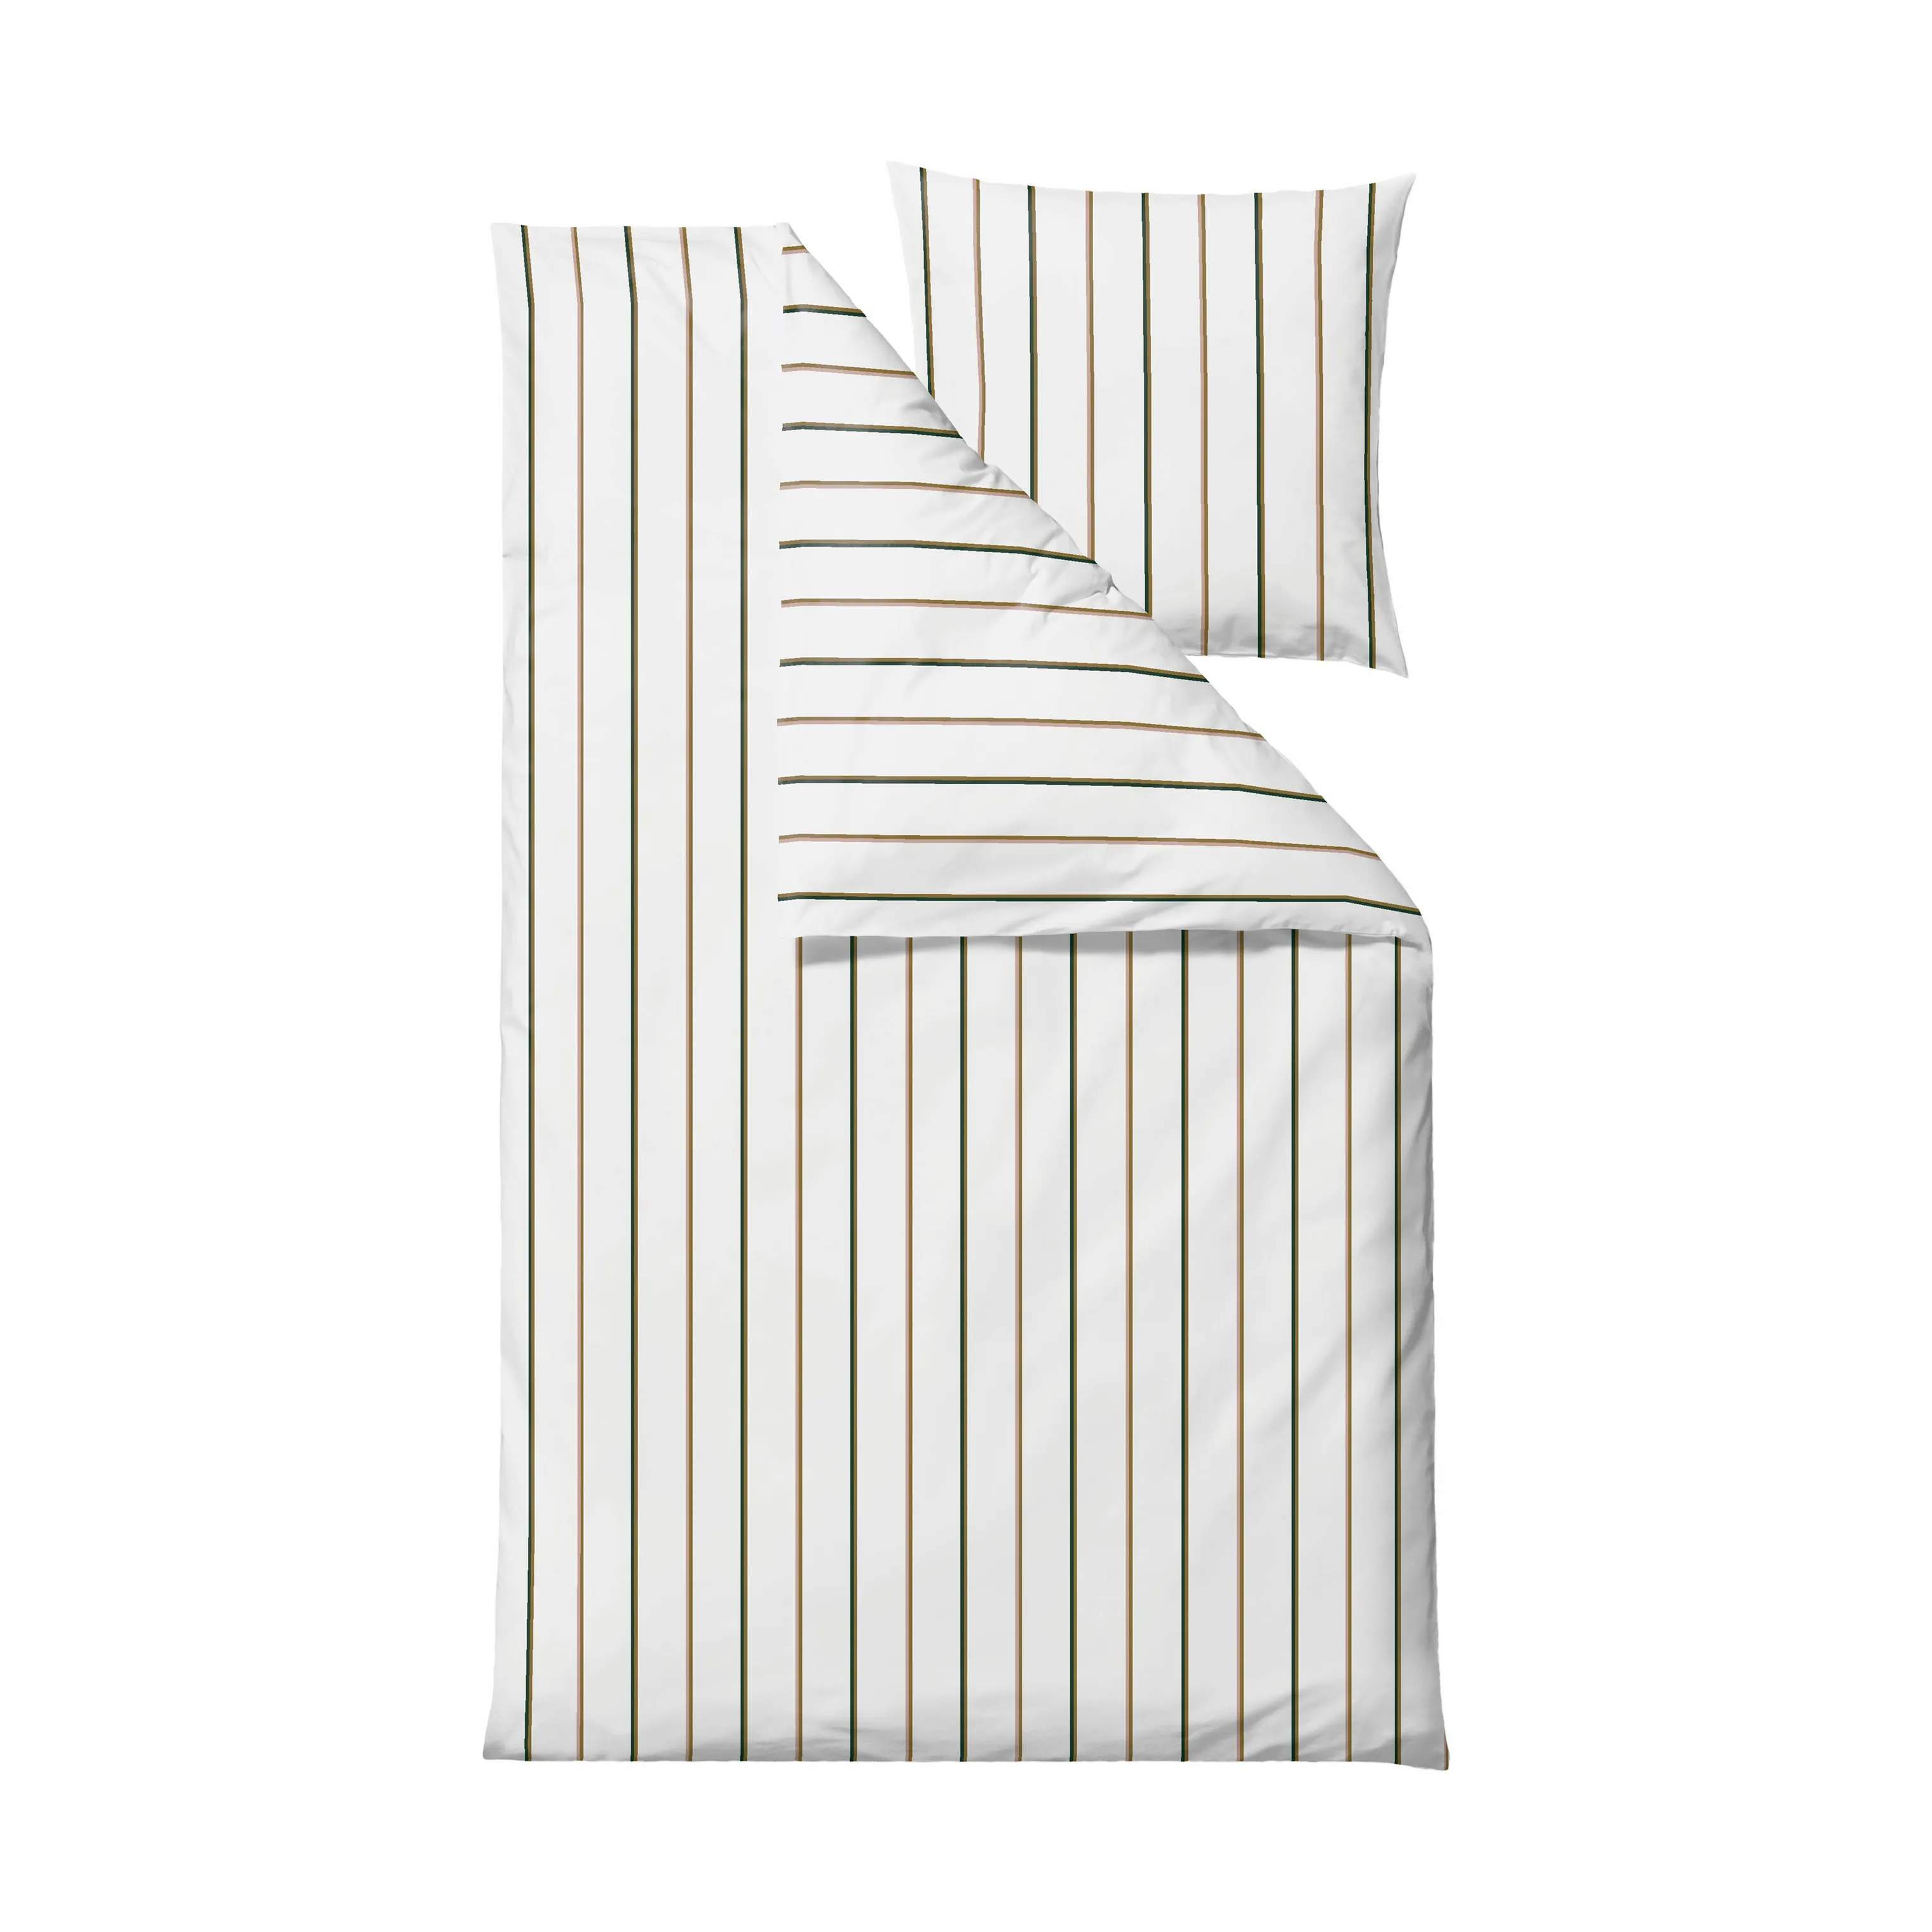 Stripe Sengetøj, white, large